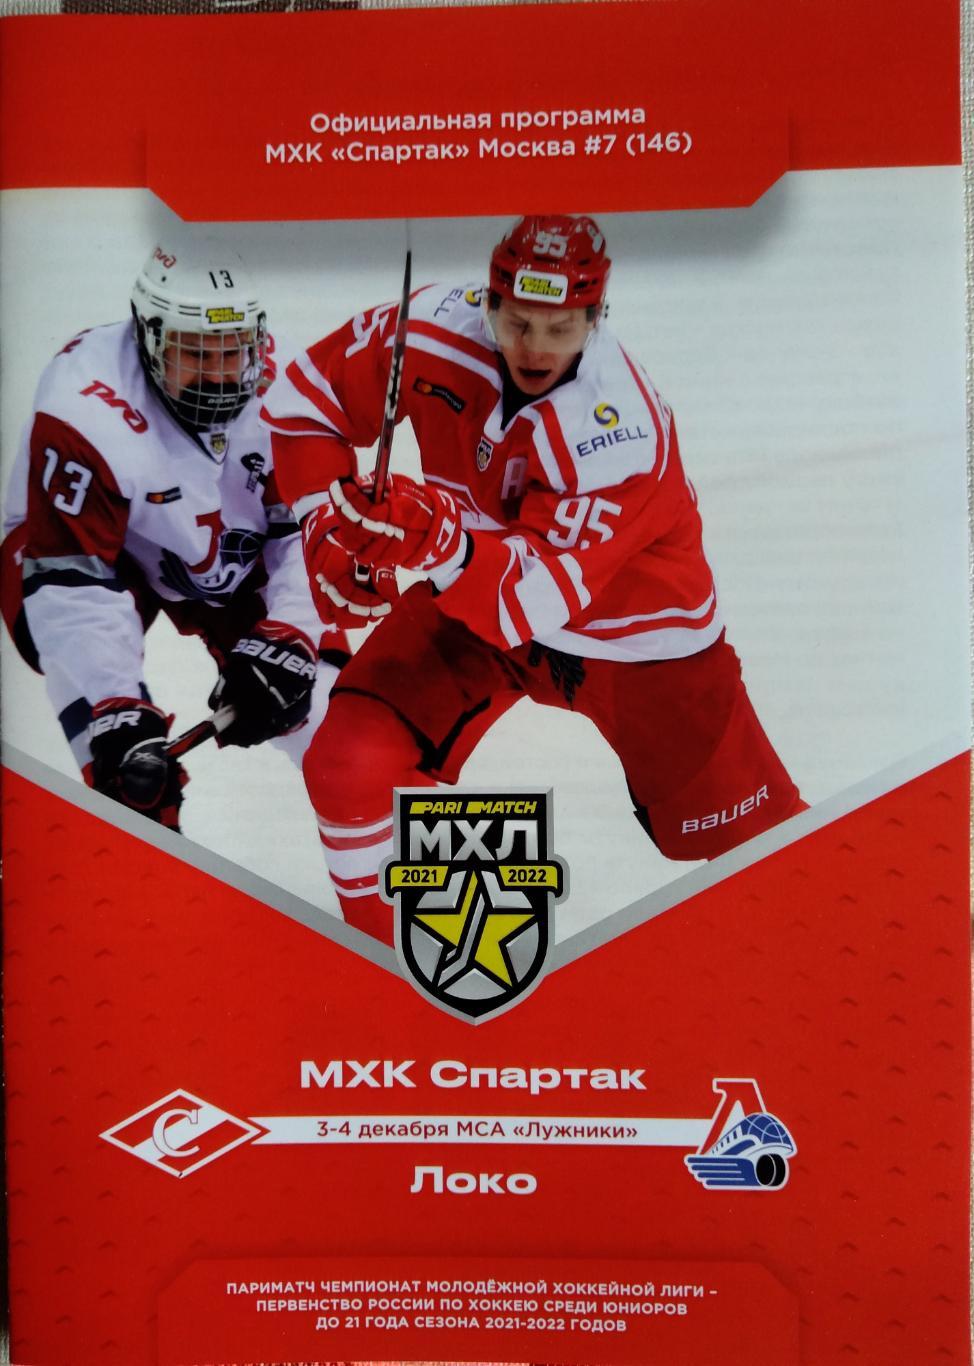 МХЛ 2021/22 Мхк Спартак - Локо 3-4.12.21